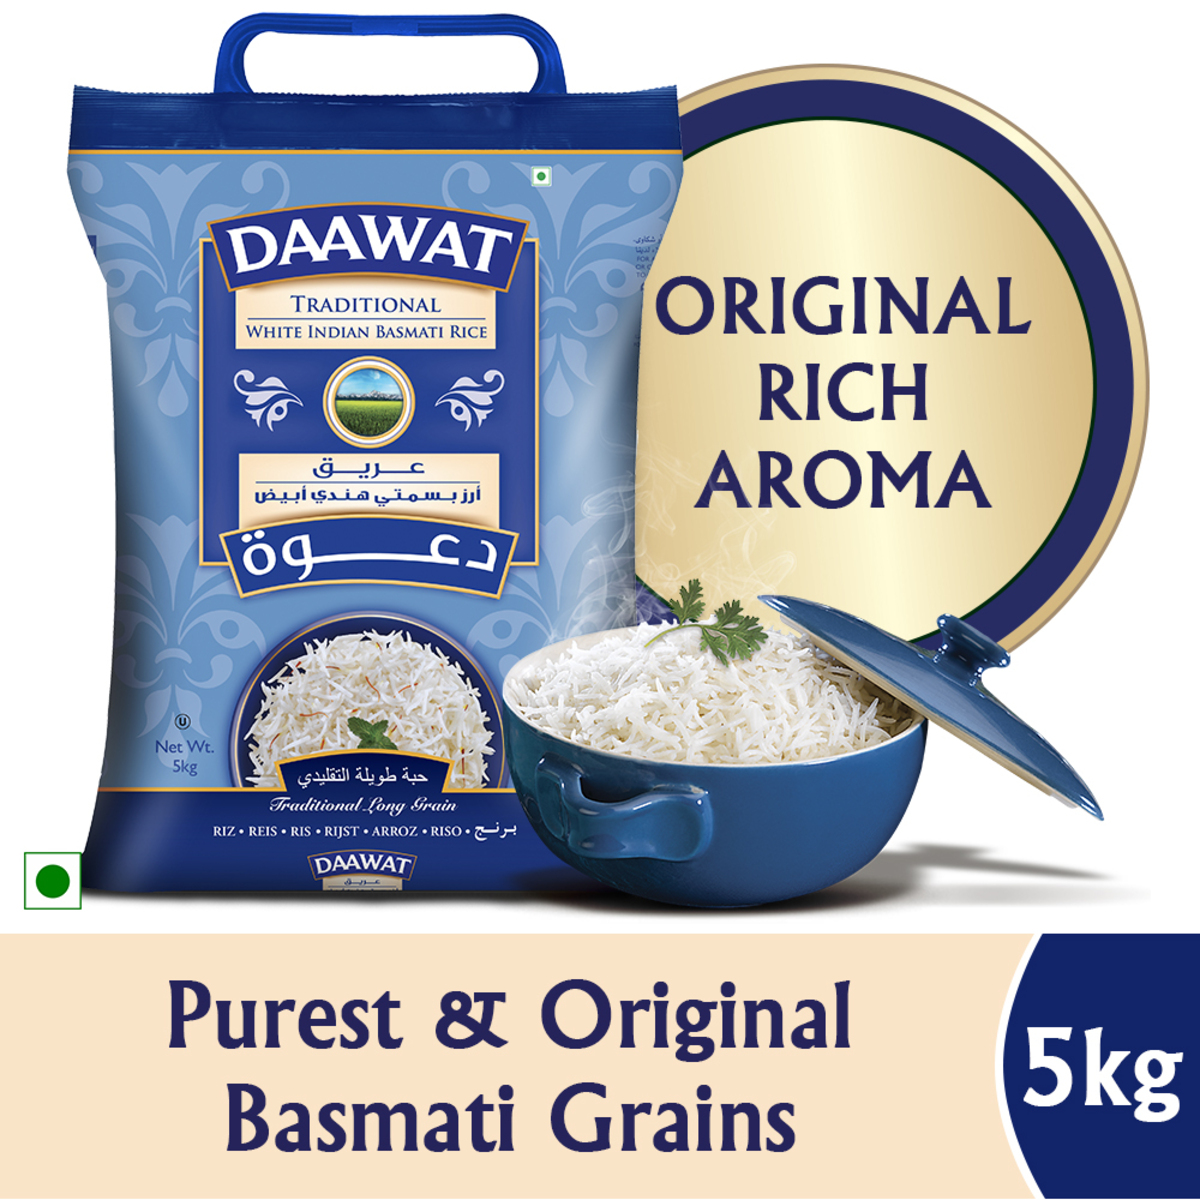 Daawat Traditional White Indian Basmati Rice 5 kg